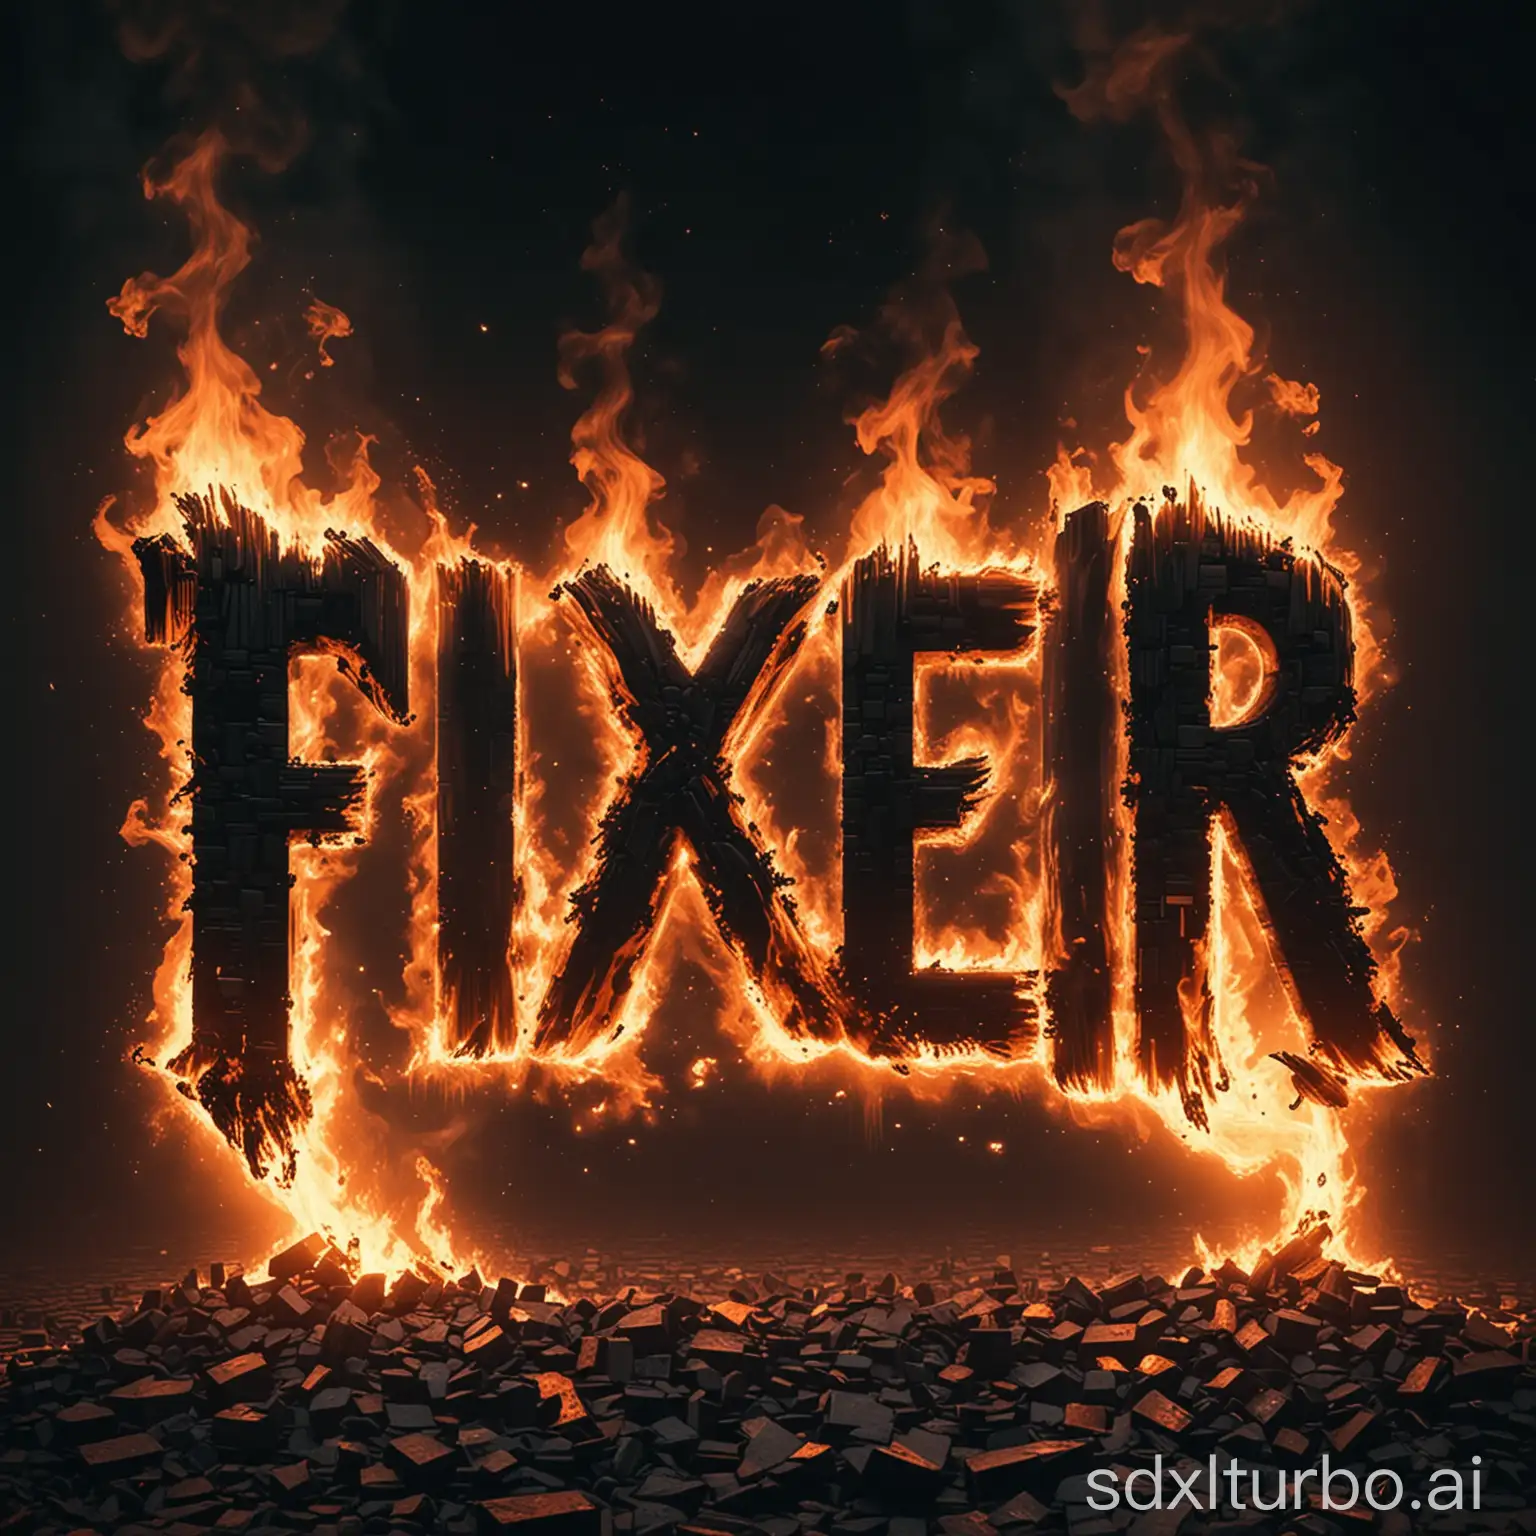 Word-Fixer-on-Fire-Glitch-Effect-Distorted-Pixelized-Art-on-Dark-Background